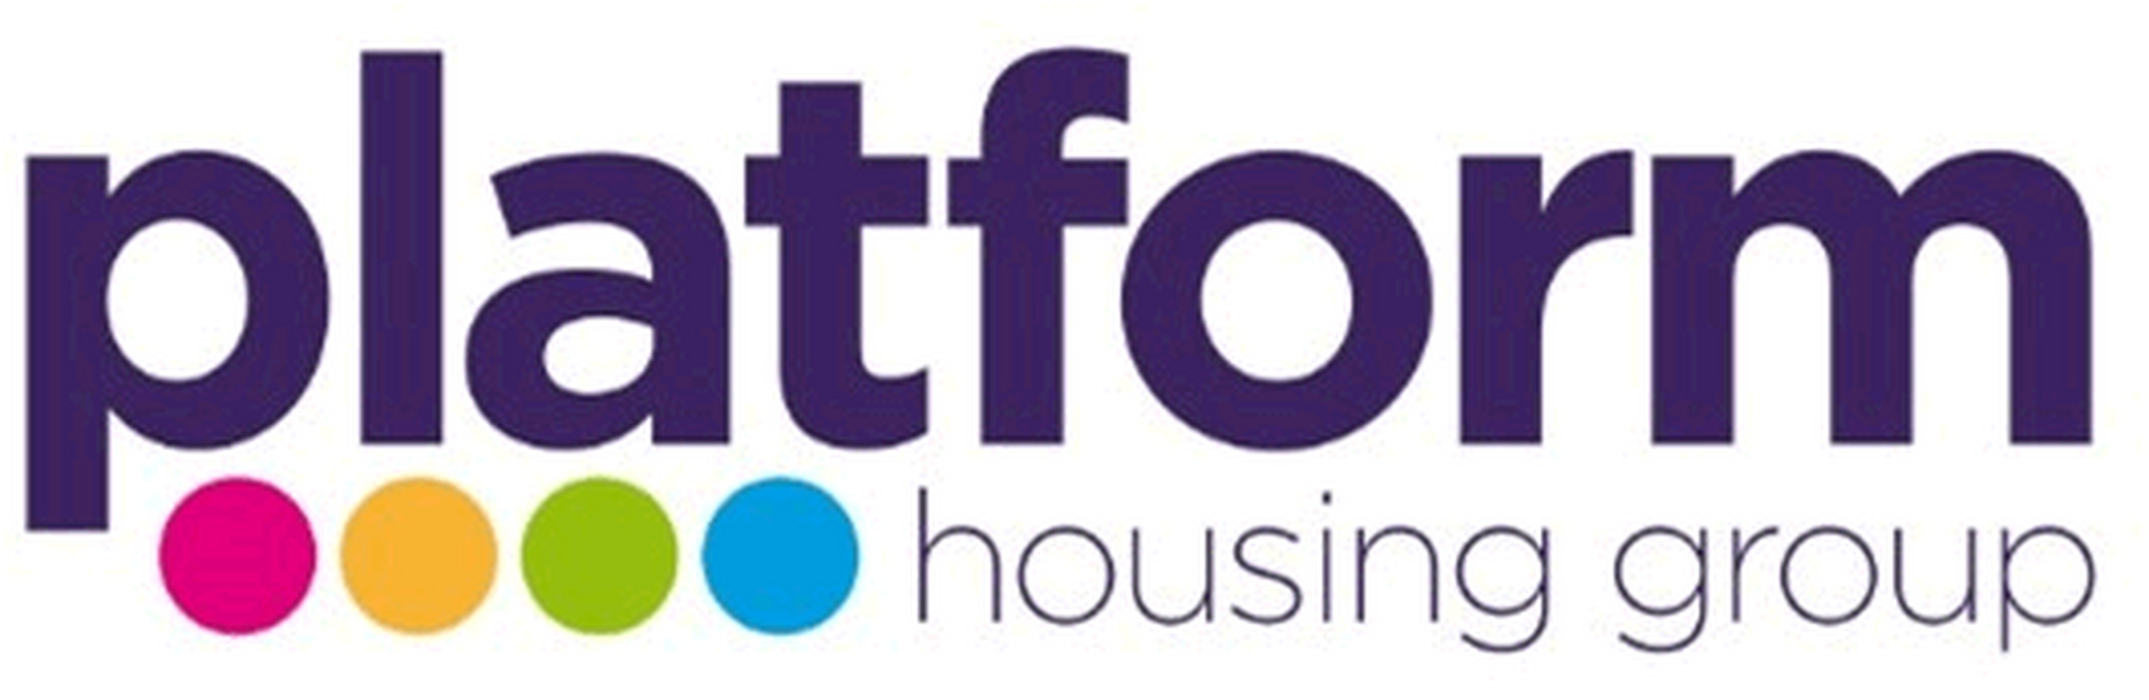 platform-housing-group